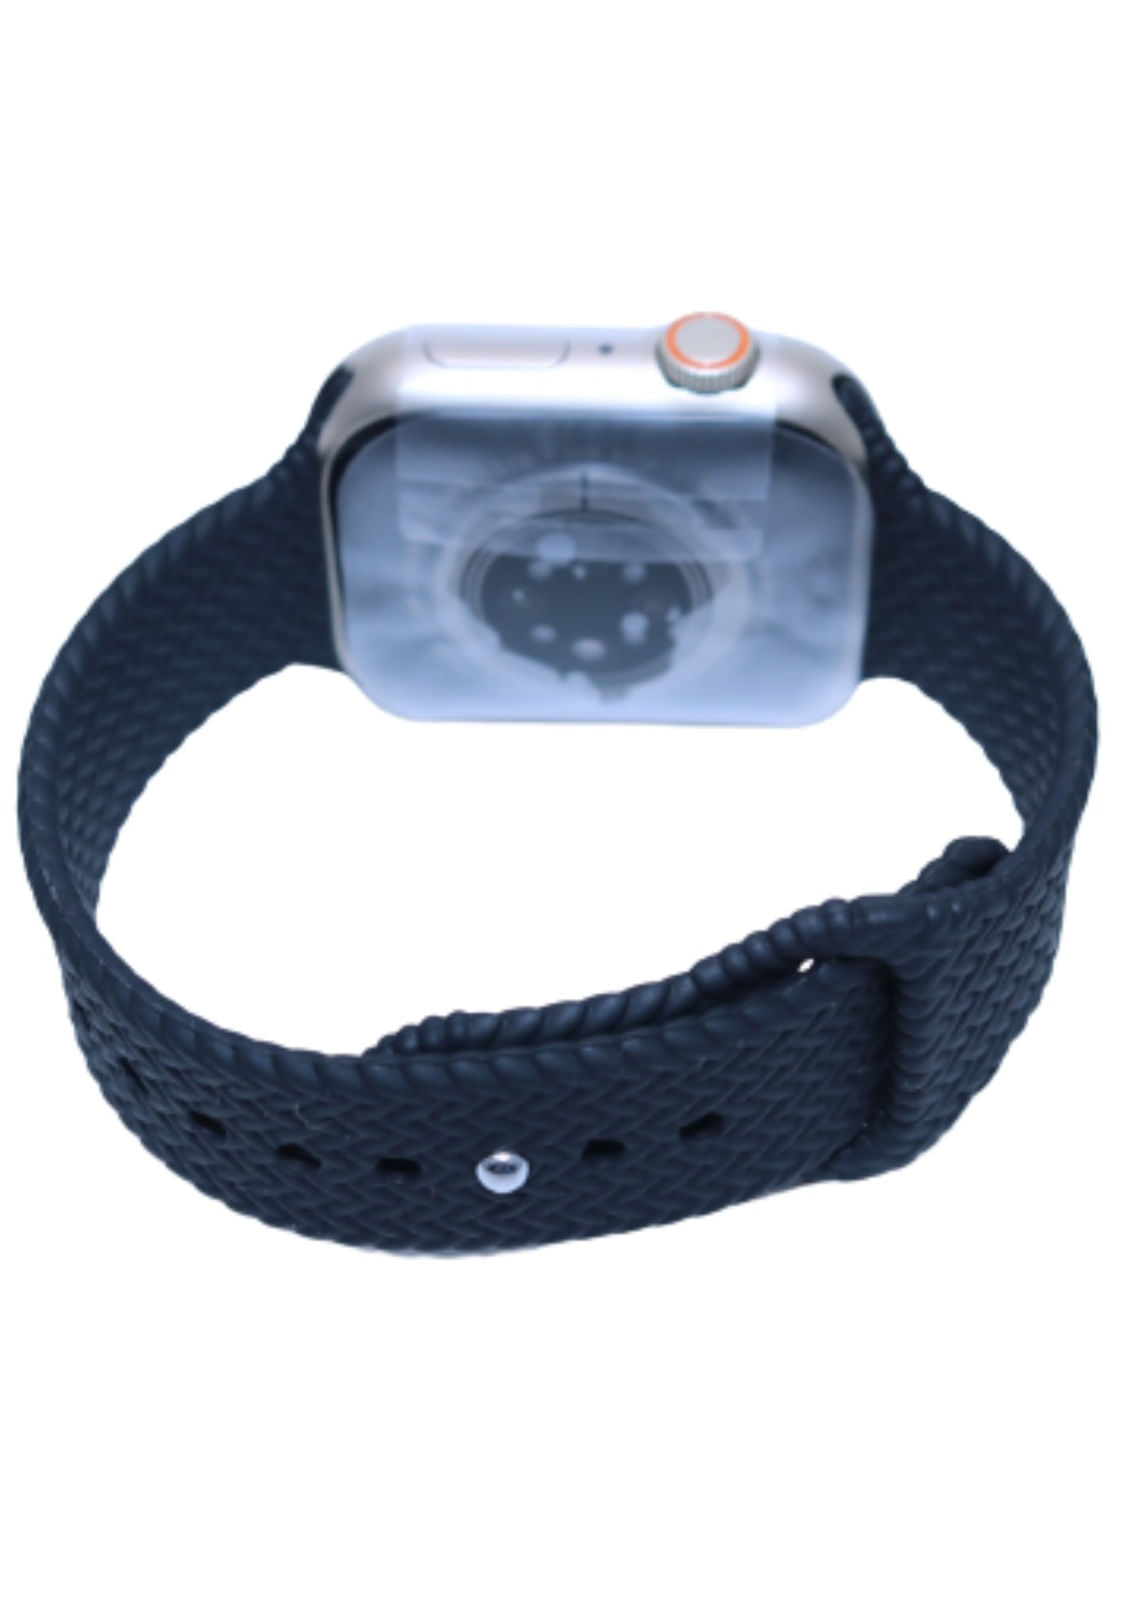 Smartwatch Pulsera Reloj Inteligente Con Audifonos Bluetooth - Muy Bacano